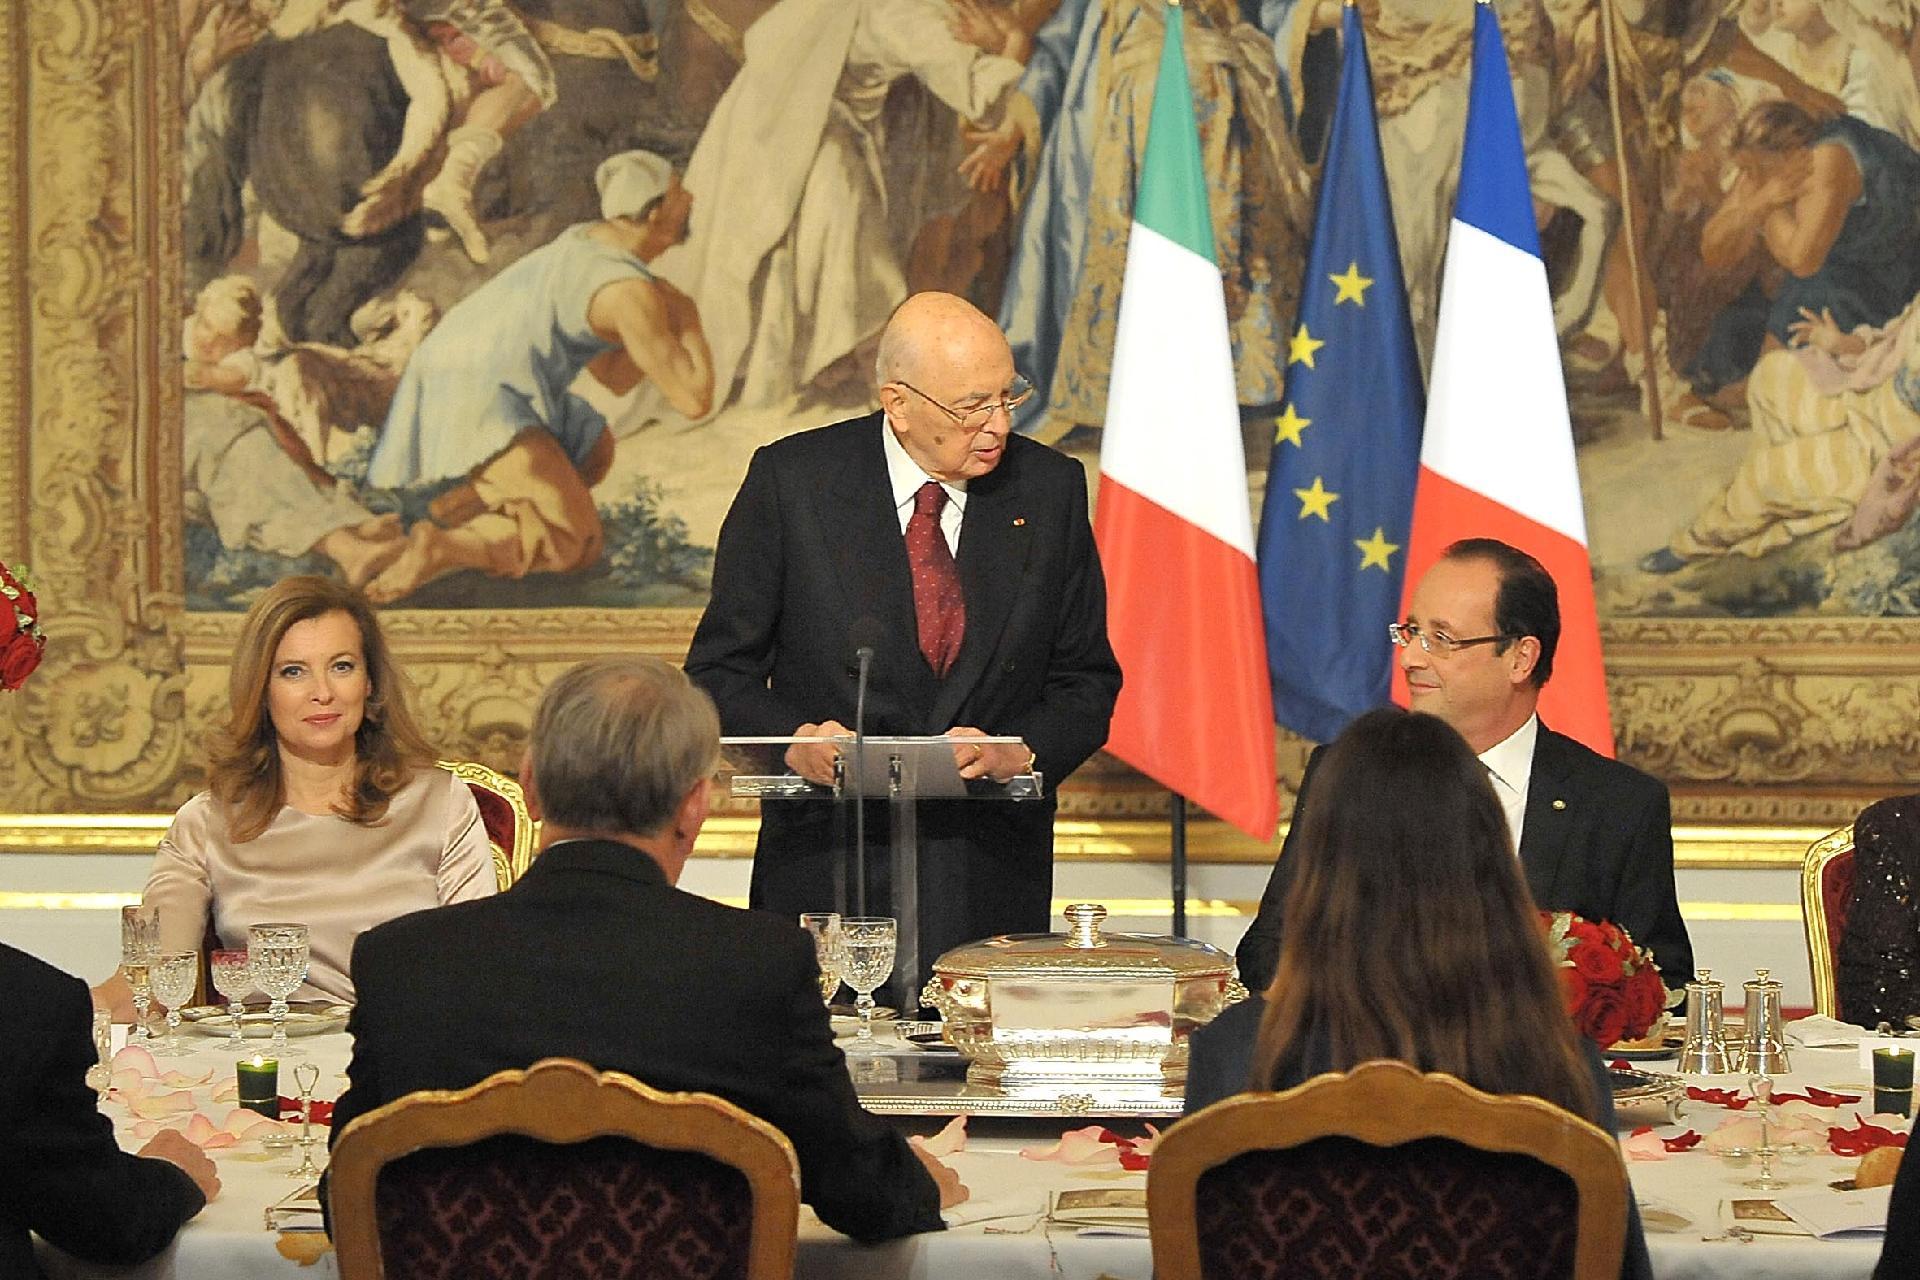 Il Presidente Giorgio Napolitano in occasione del Brindisi al Pranzo di Stato offerto dal Presidente della Repubblica francese Francois Hollande